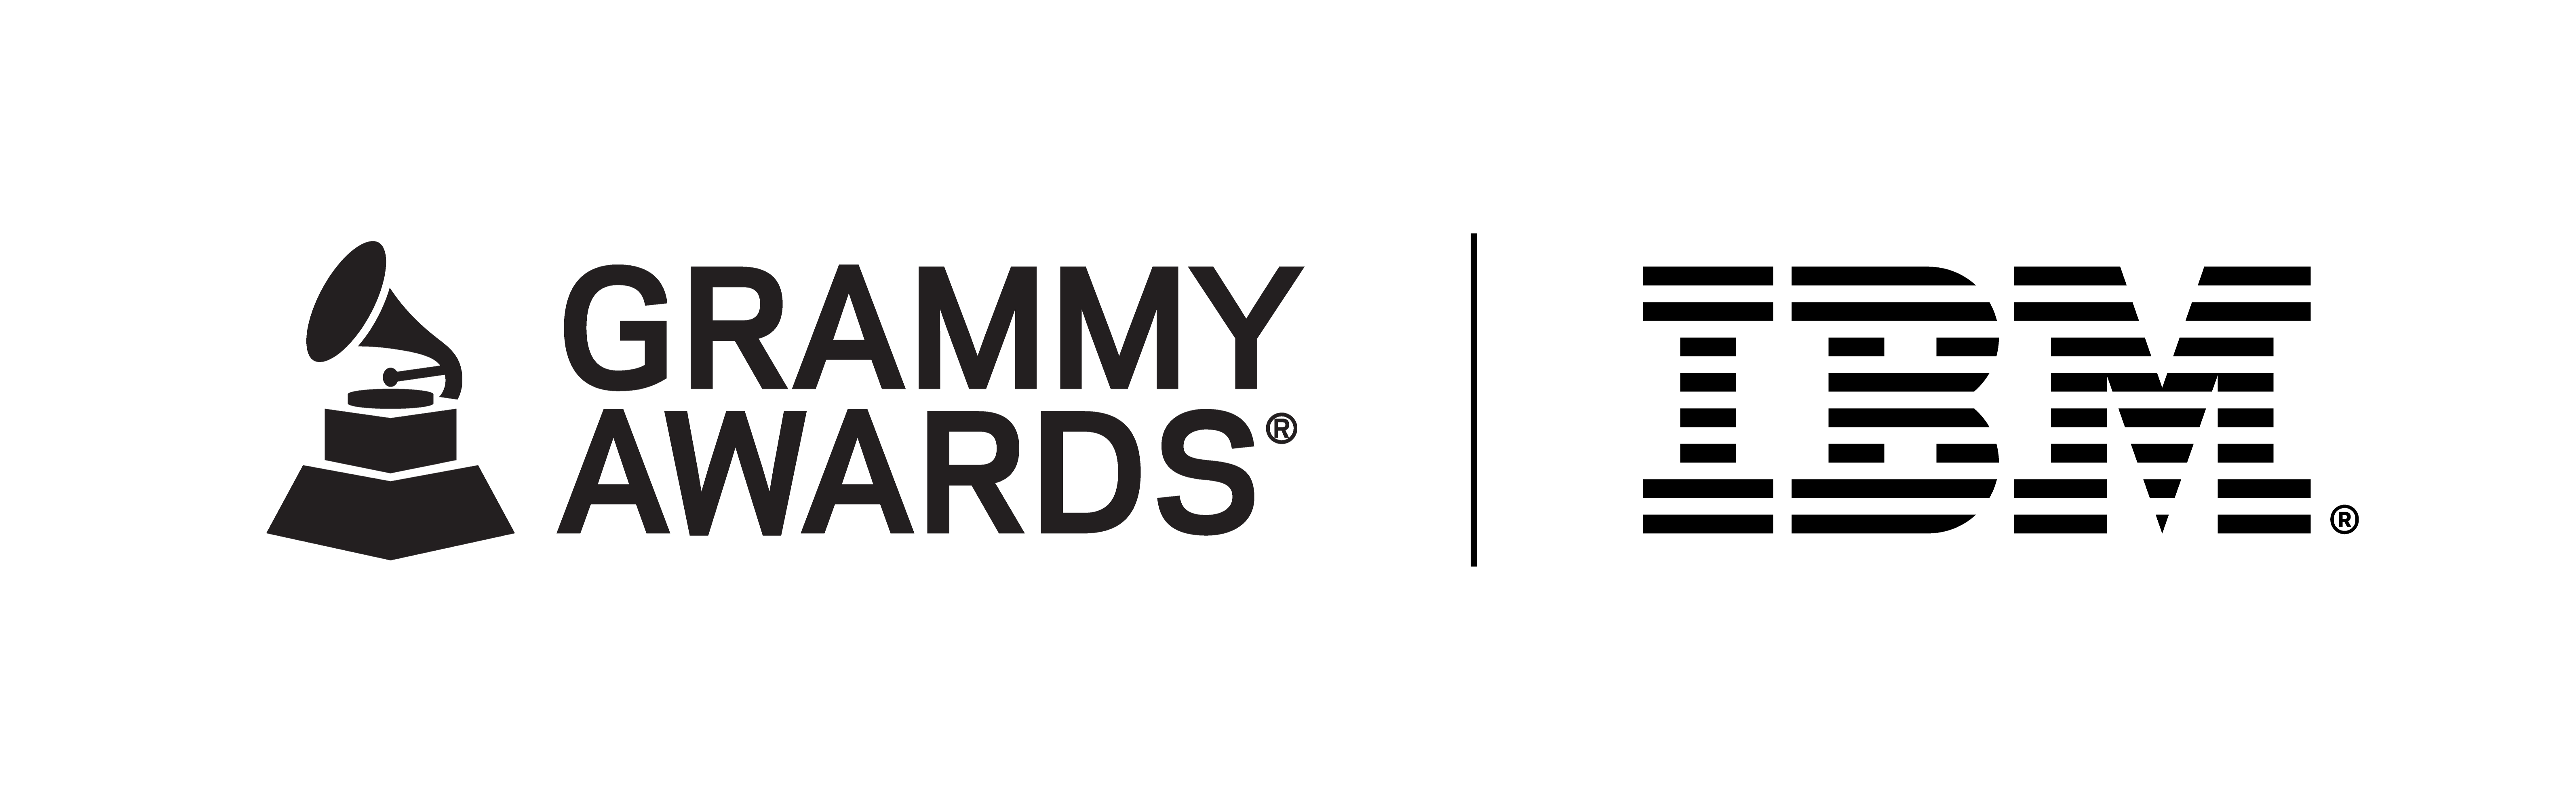 Bloqueio do logotipo do IBM-GRAMMY Awards com gramofone